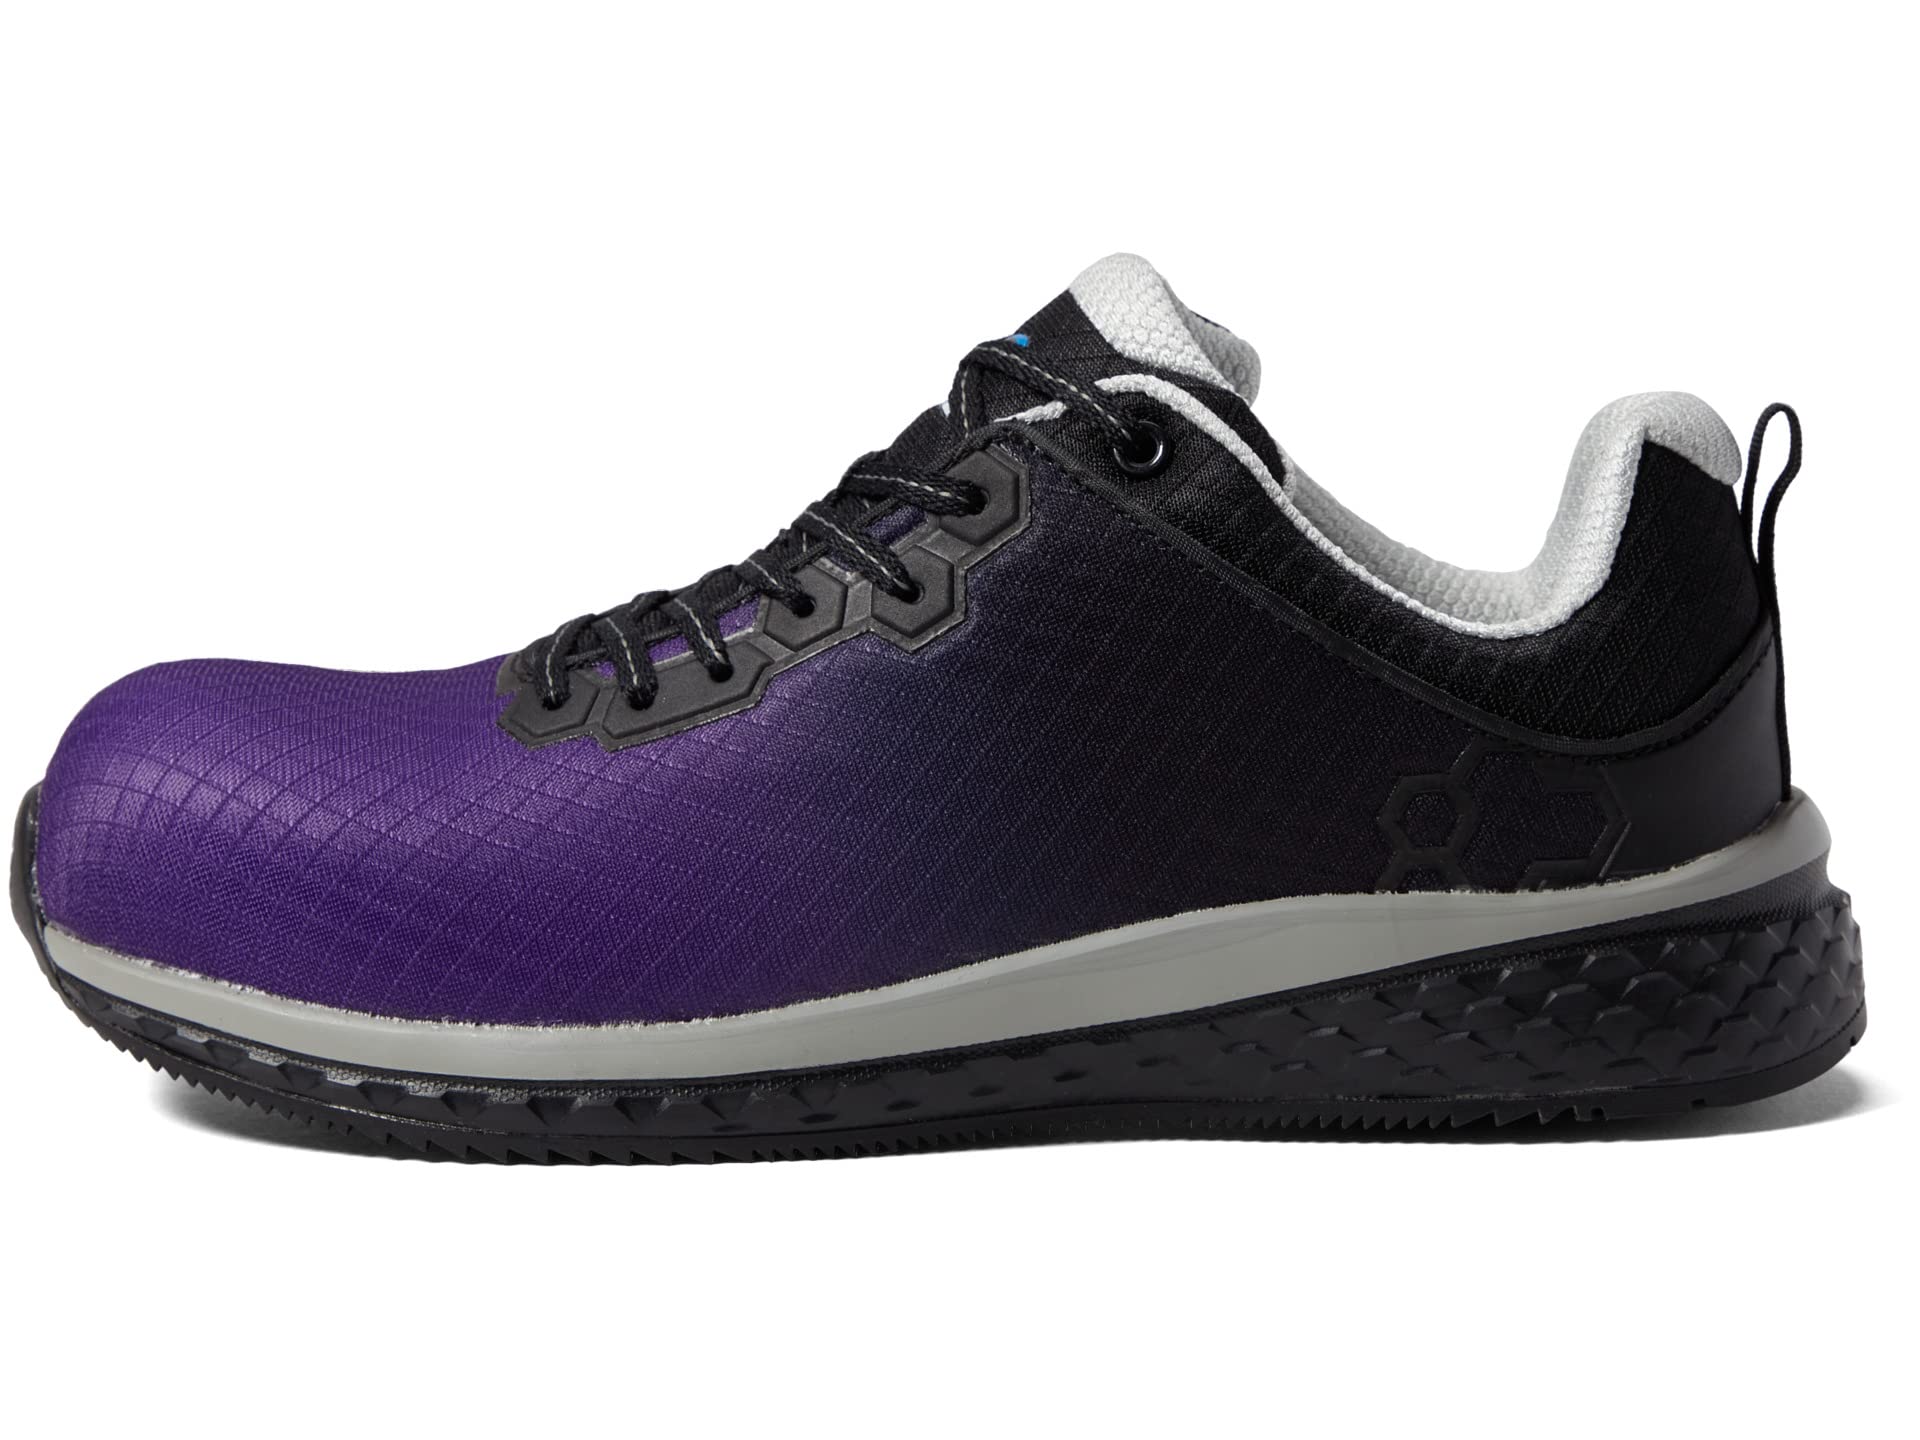 Кроссовки Nautilus Safety Footwear Altus CT, фиолетовый/черный кроссовки altus nautilus safety footwear черный